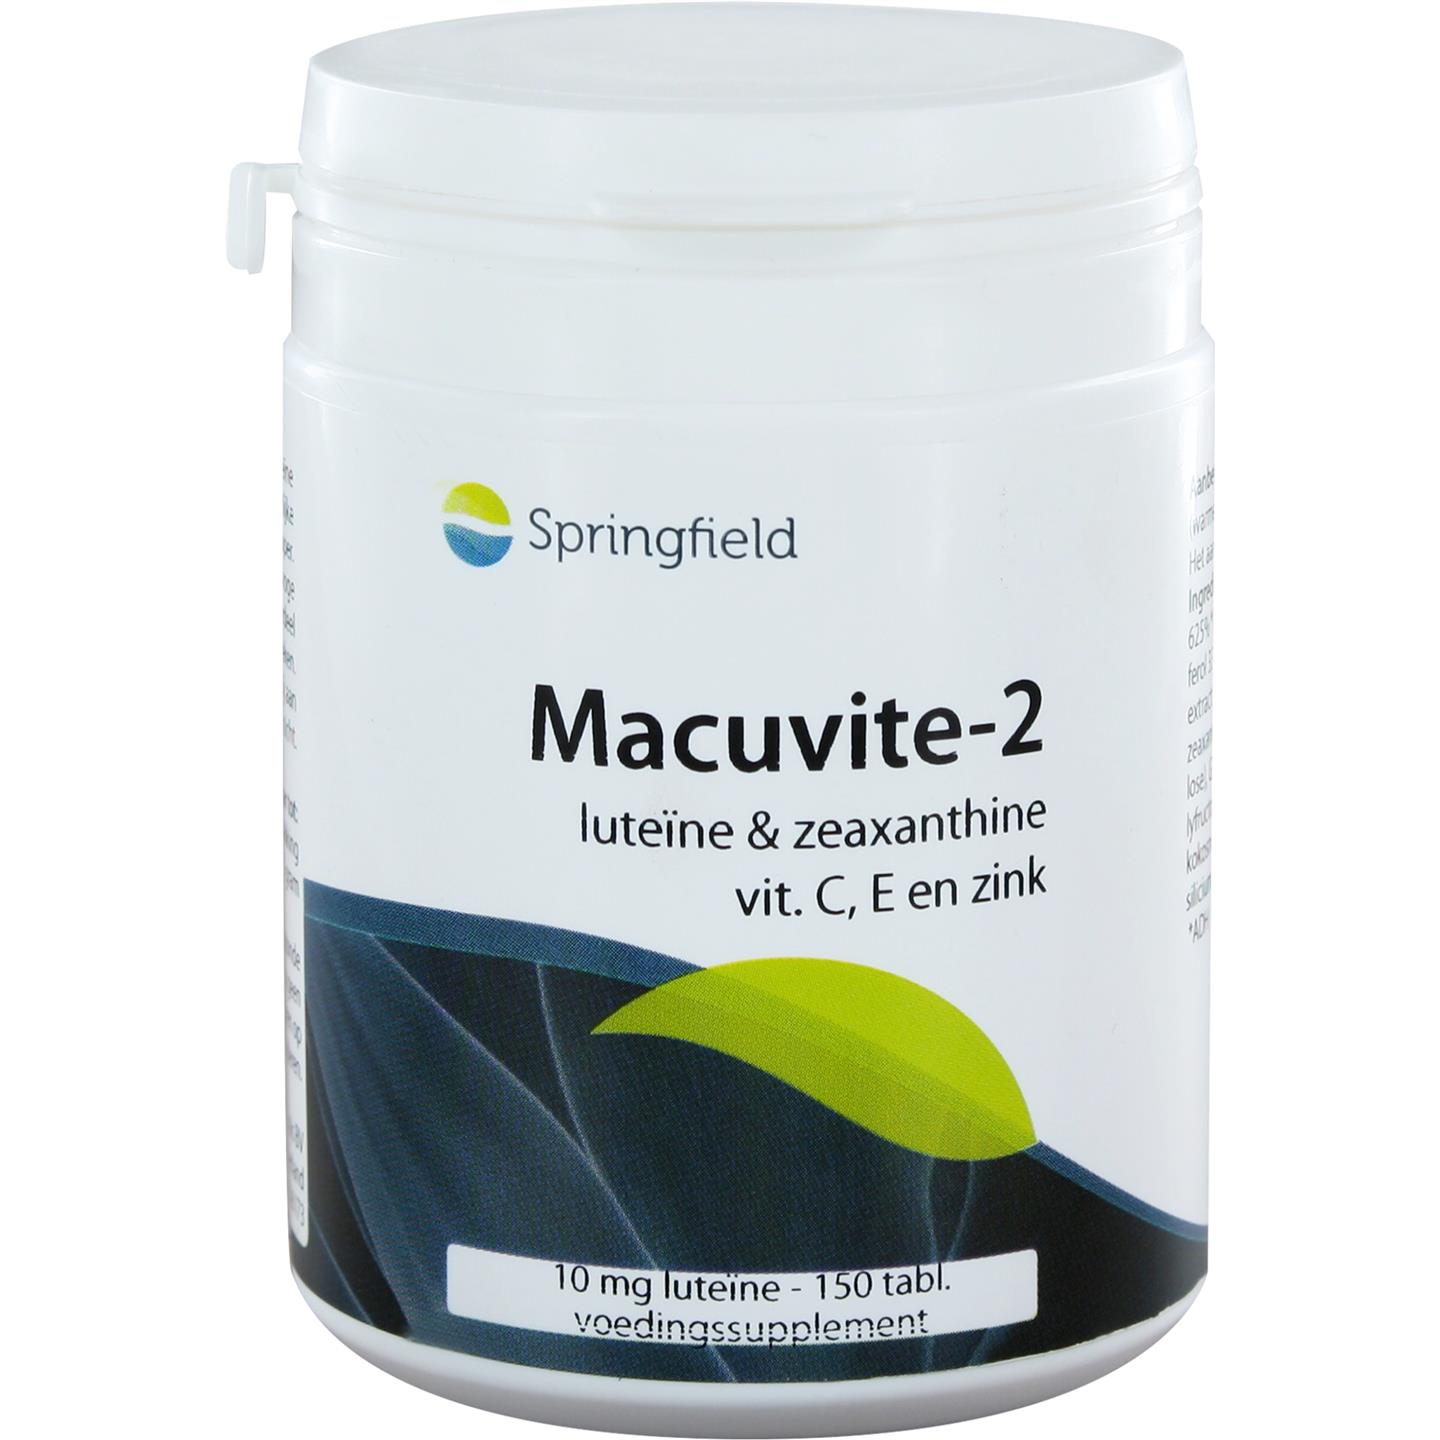 Macuvite-2